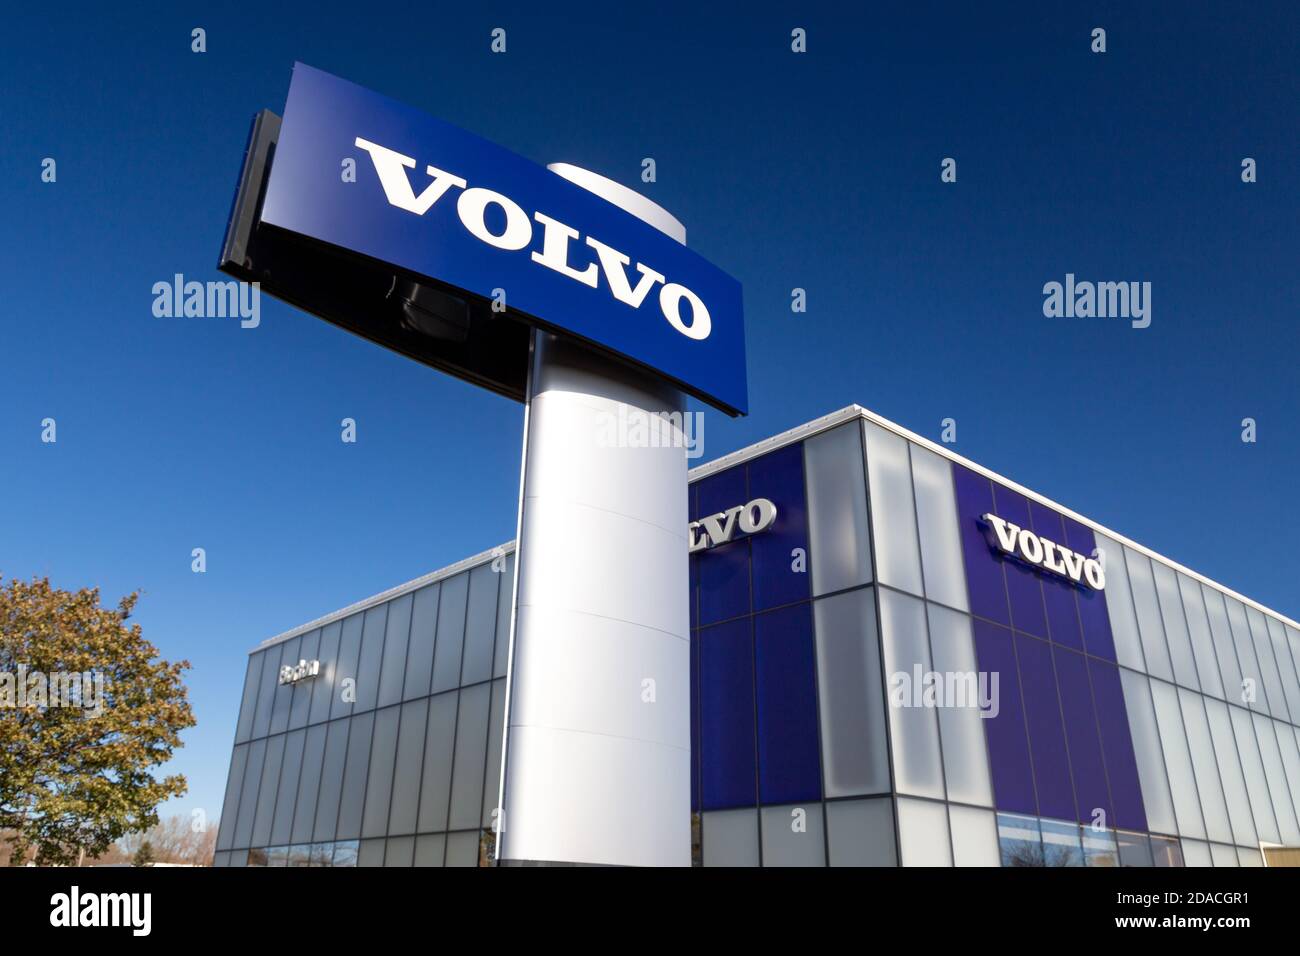 MINNEAPOLIS, MN/USA - 2. NOVEMBER 2020: Volvo Autohaus Zeichen und Logo. Volvo ist ein schwedischer Automobilhersteller. Stockfoto